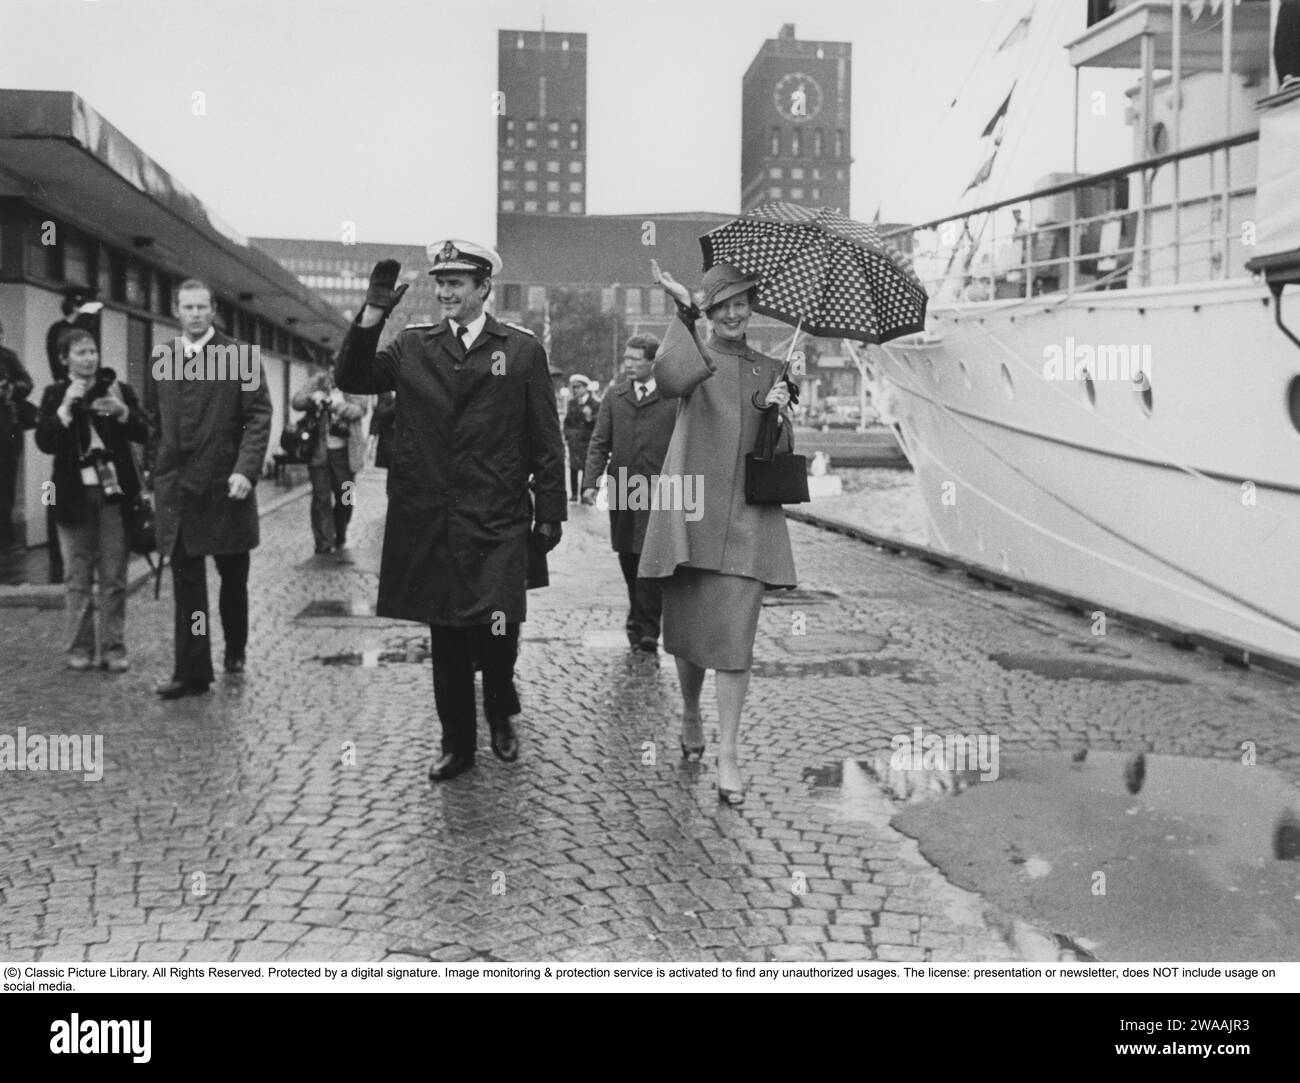 Königin Margrethe II. Von Dänemark. Hier mit ihrem Ehemann Prinz Henrik von Dänemark im Zusammenhang mit ihrem Besuch in Oslo Norwegen. Das Rathaus ist im Hintergrund sichtbar. 1982 Stockfoto